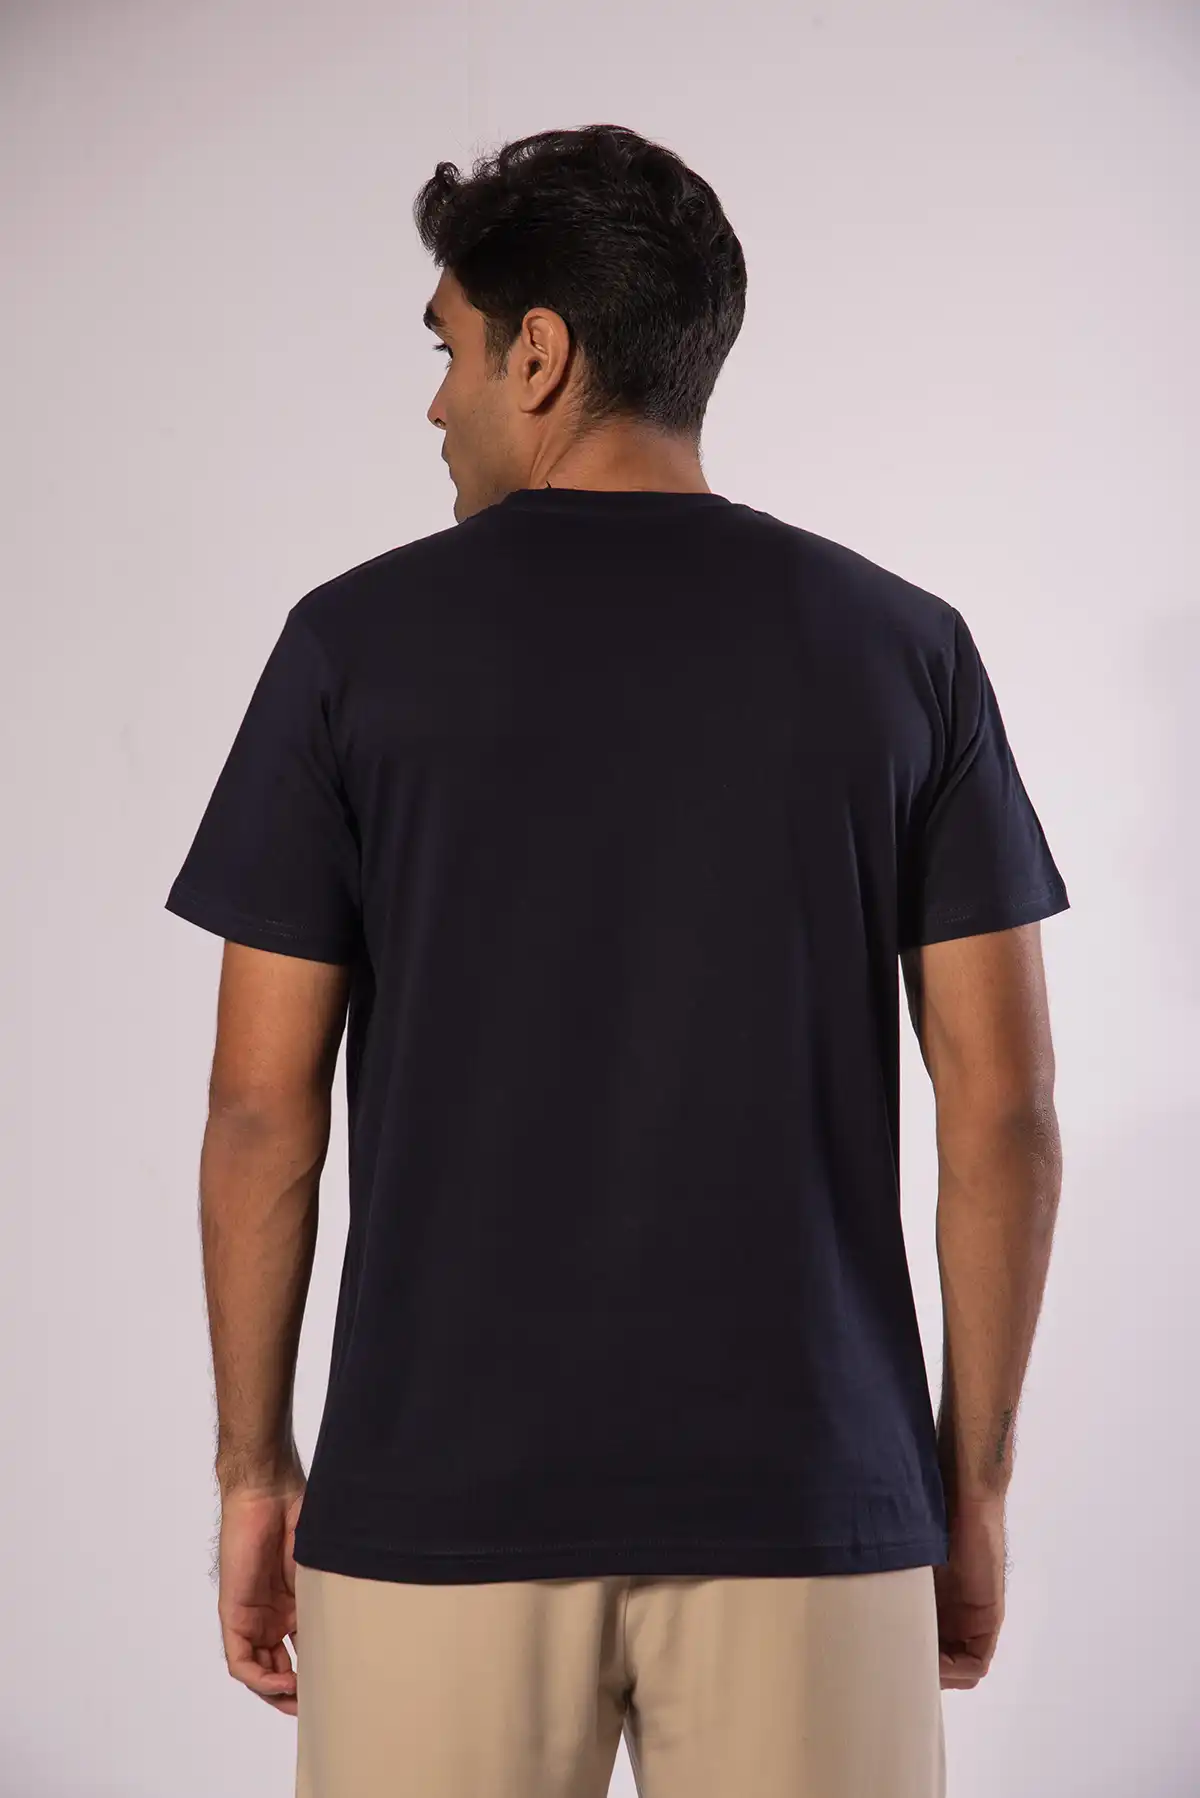 Unisex Crew Neck Cotton T-Shirt - Ultra Mrine Navy